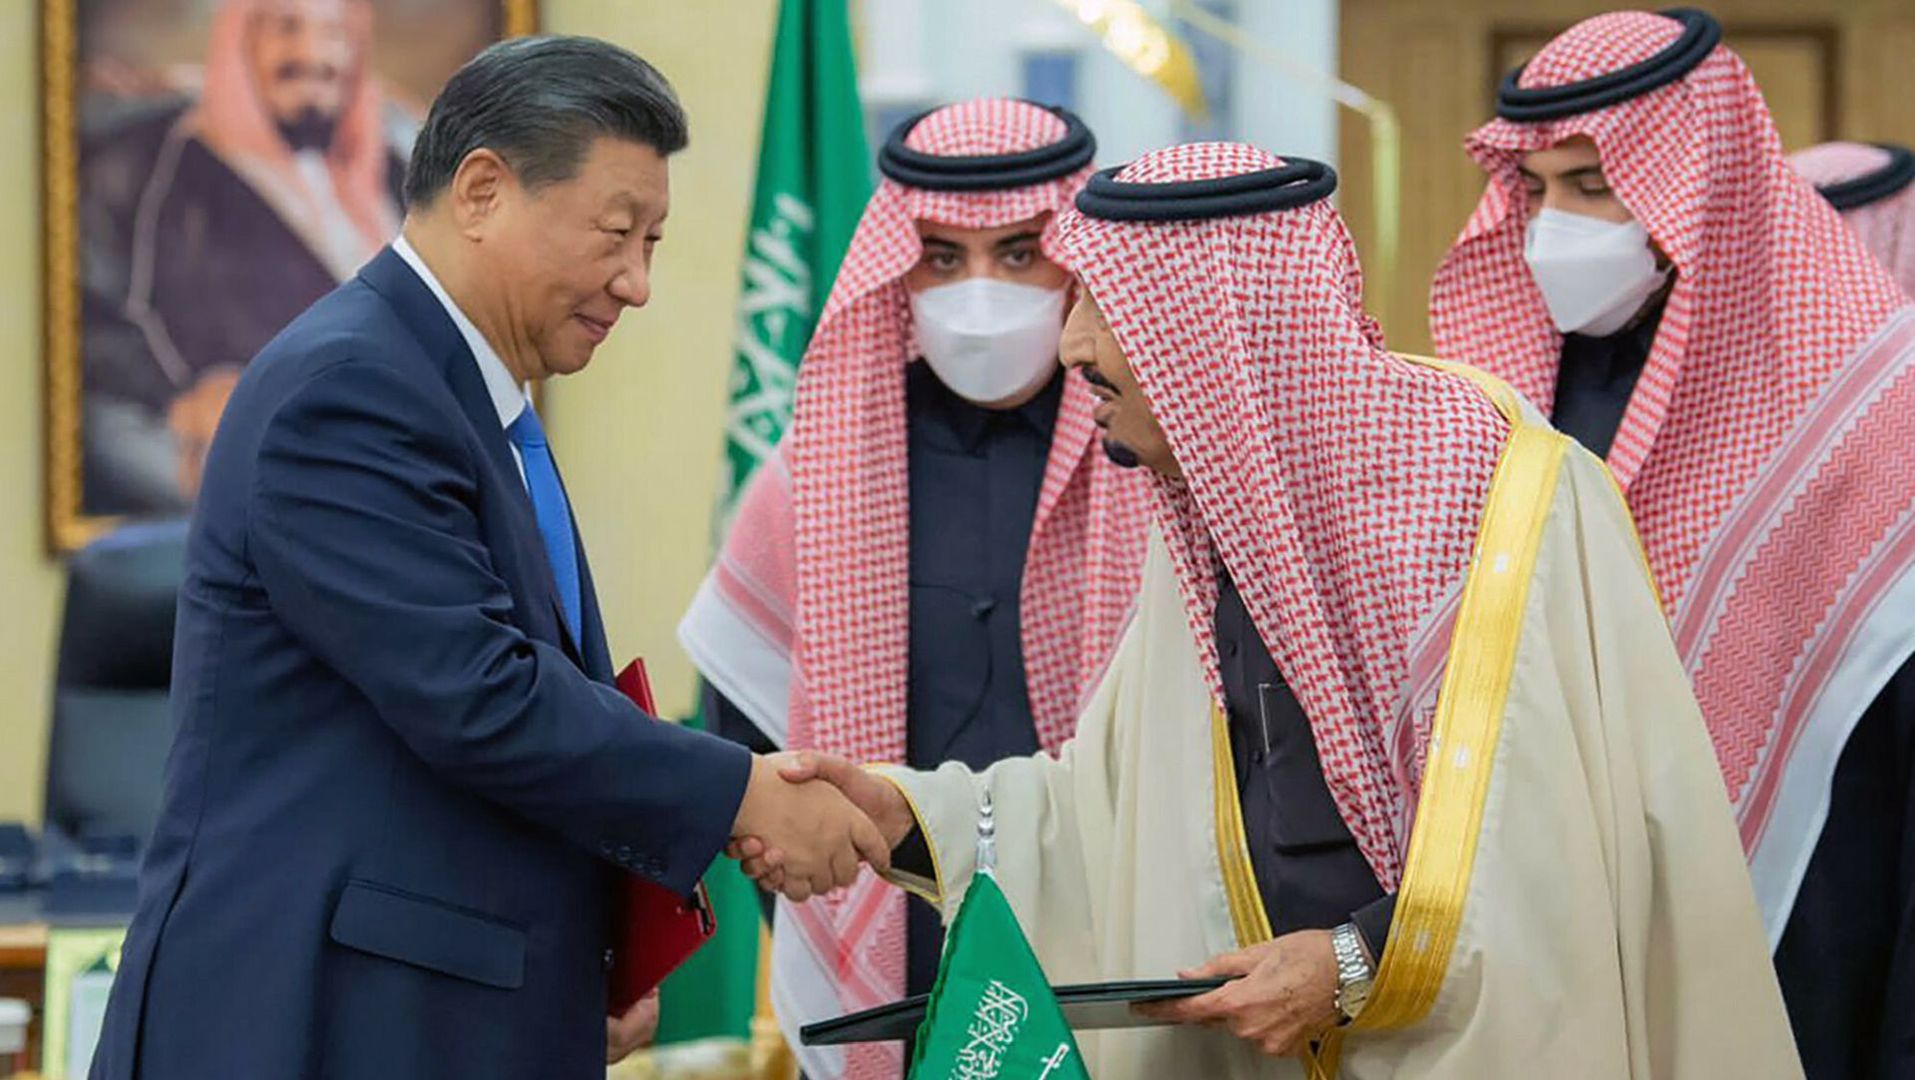 Saudyjczycy weszli w konflikt z USA nie godząc się na zwiększenie wydobycia ropy. Nowe wielomiliardowe interesy robią z Chinami